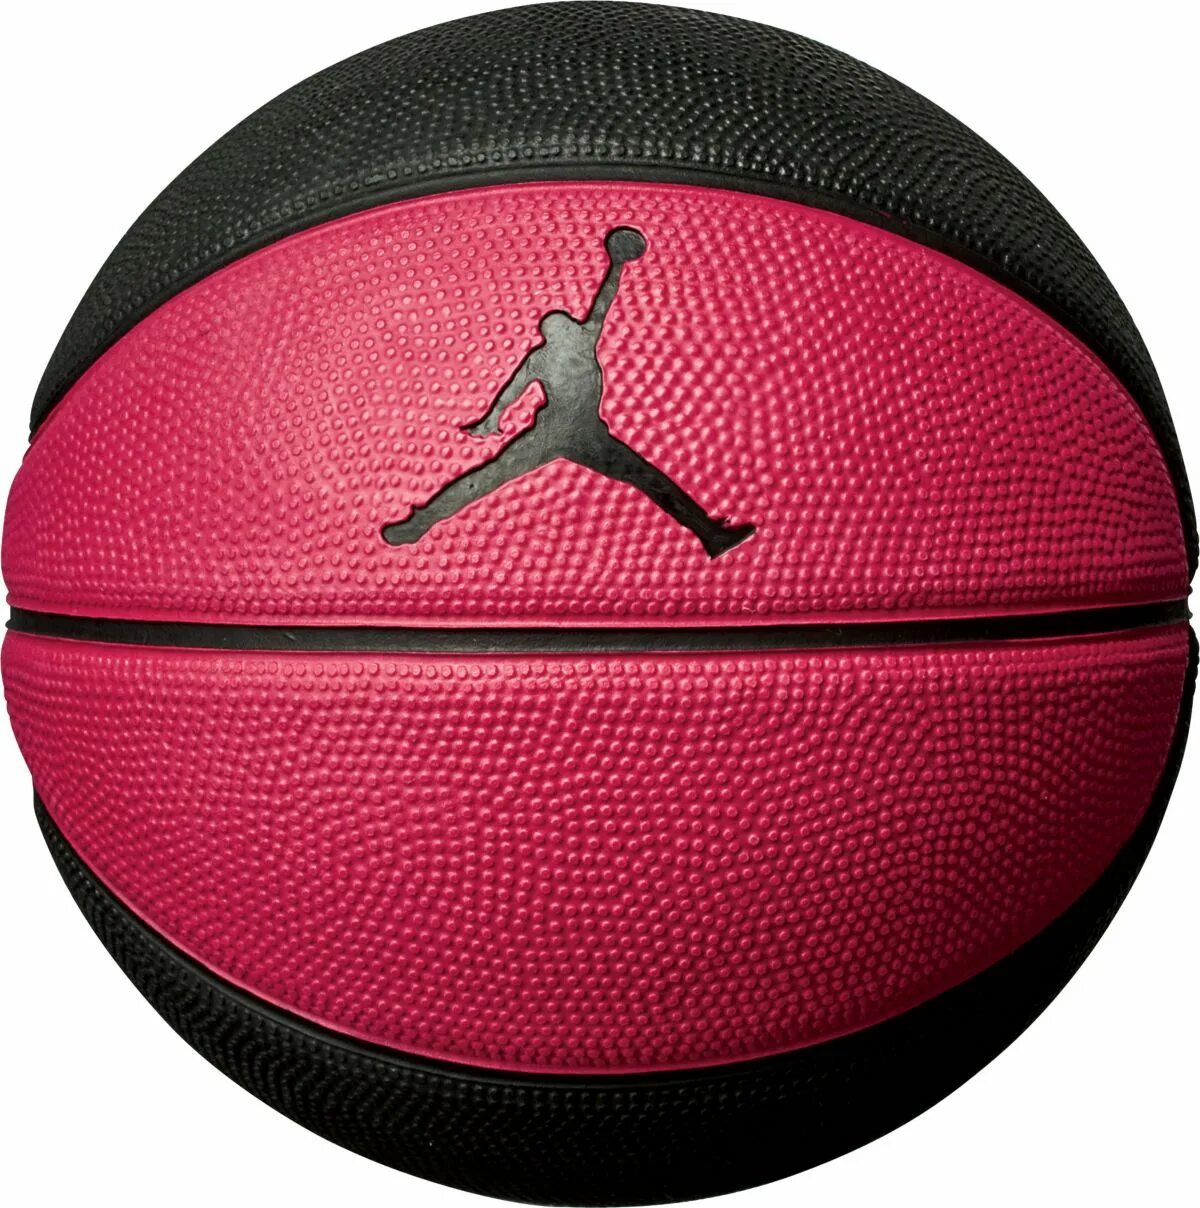 Спортивные магазины баскетбольные мячи. Черный баскетбольный мяч найк. Баскетбольный мяч Nike skills Mini Basketball размер 3.